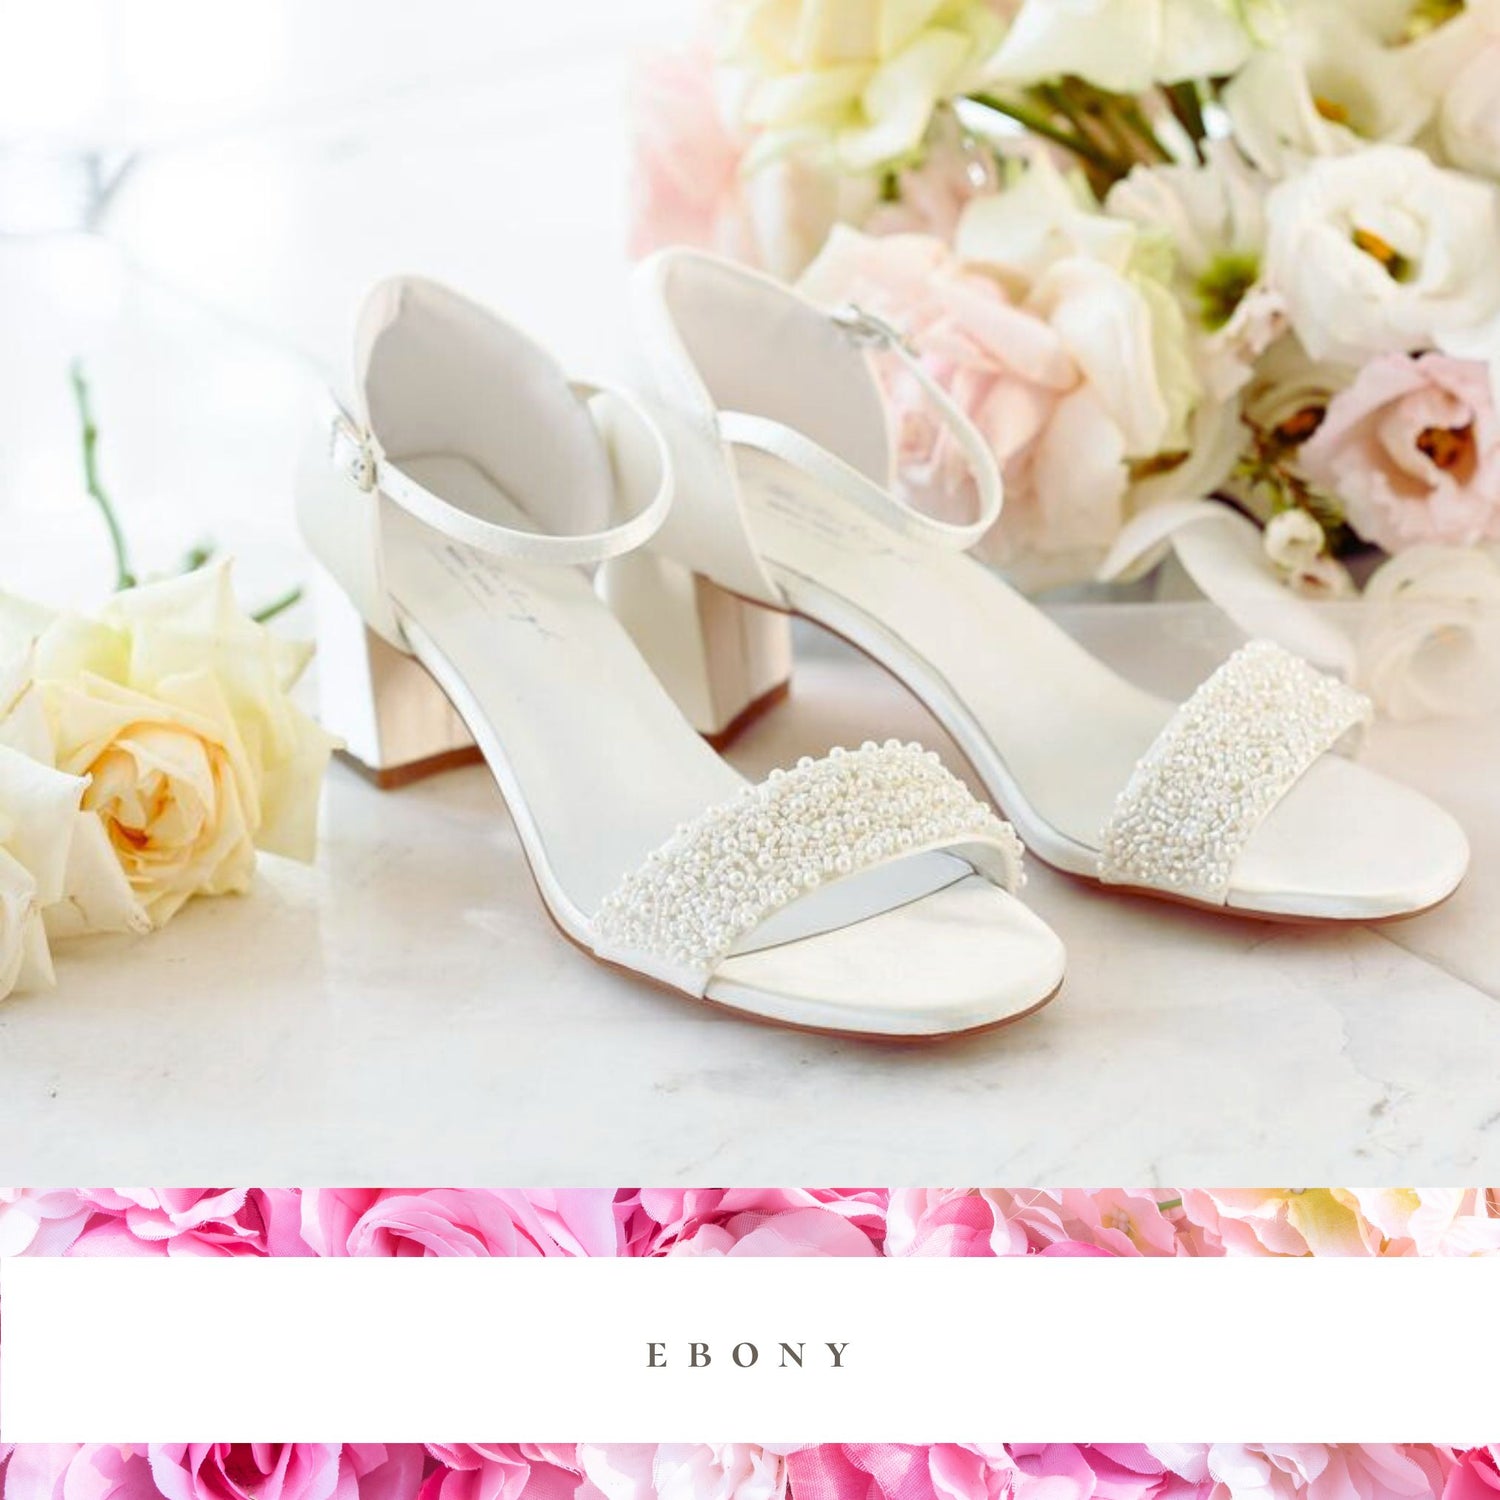 ebony wedding shoes